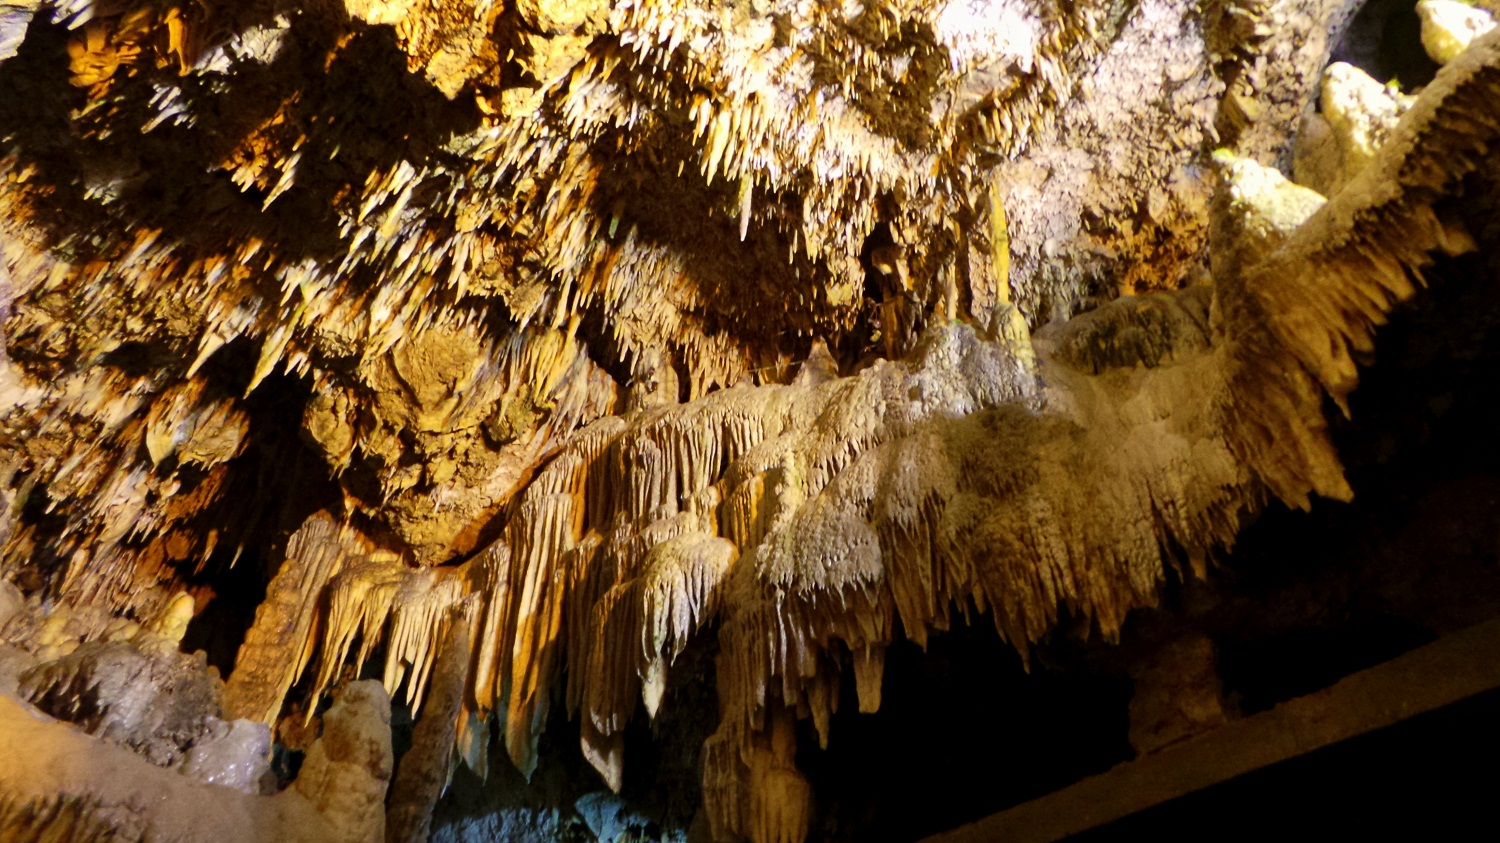 kadisha grotto 2